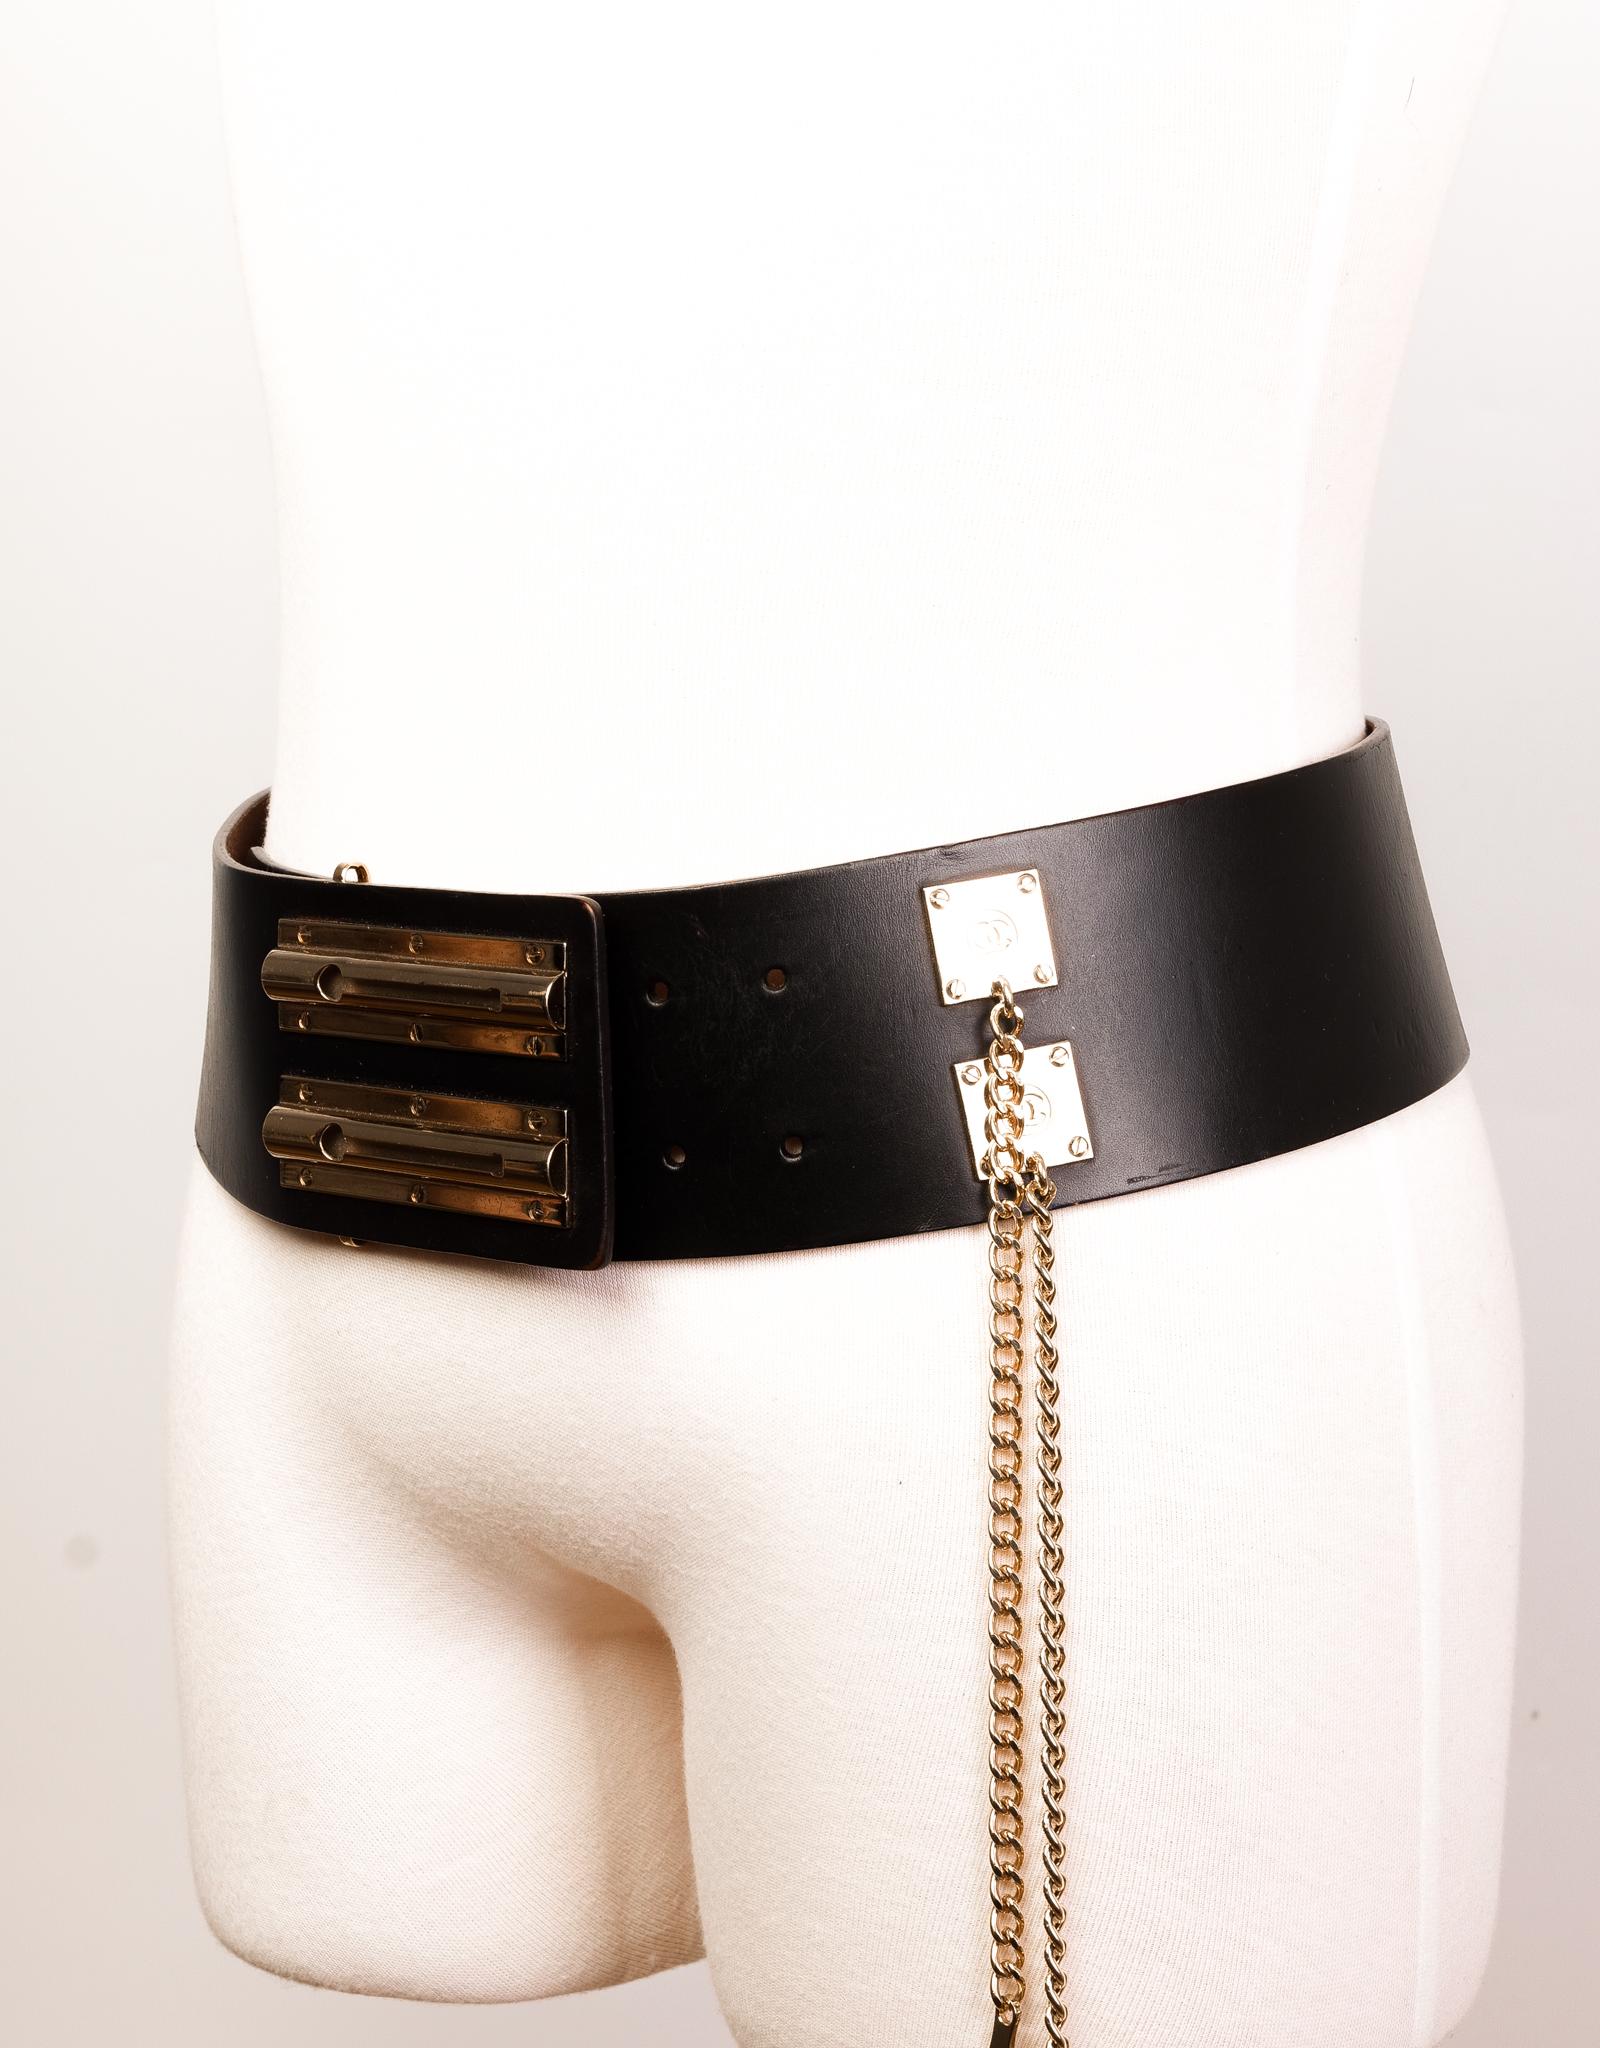 Cette ceinture Maxi de Chanel est réalisée en cuir noir et comporte une fermeture à double verrou coulissant avec des éléments en métal doré.

COULEUR : Noir
MATÉRIEL : Cuir
CODE DE L'ARTICLE : 02P
MESURES : L 40